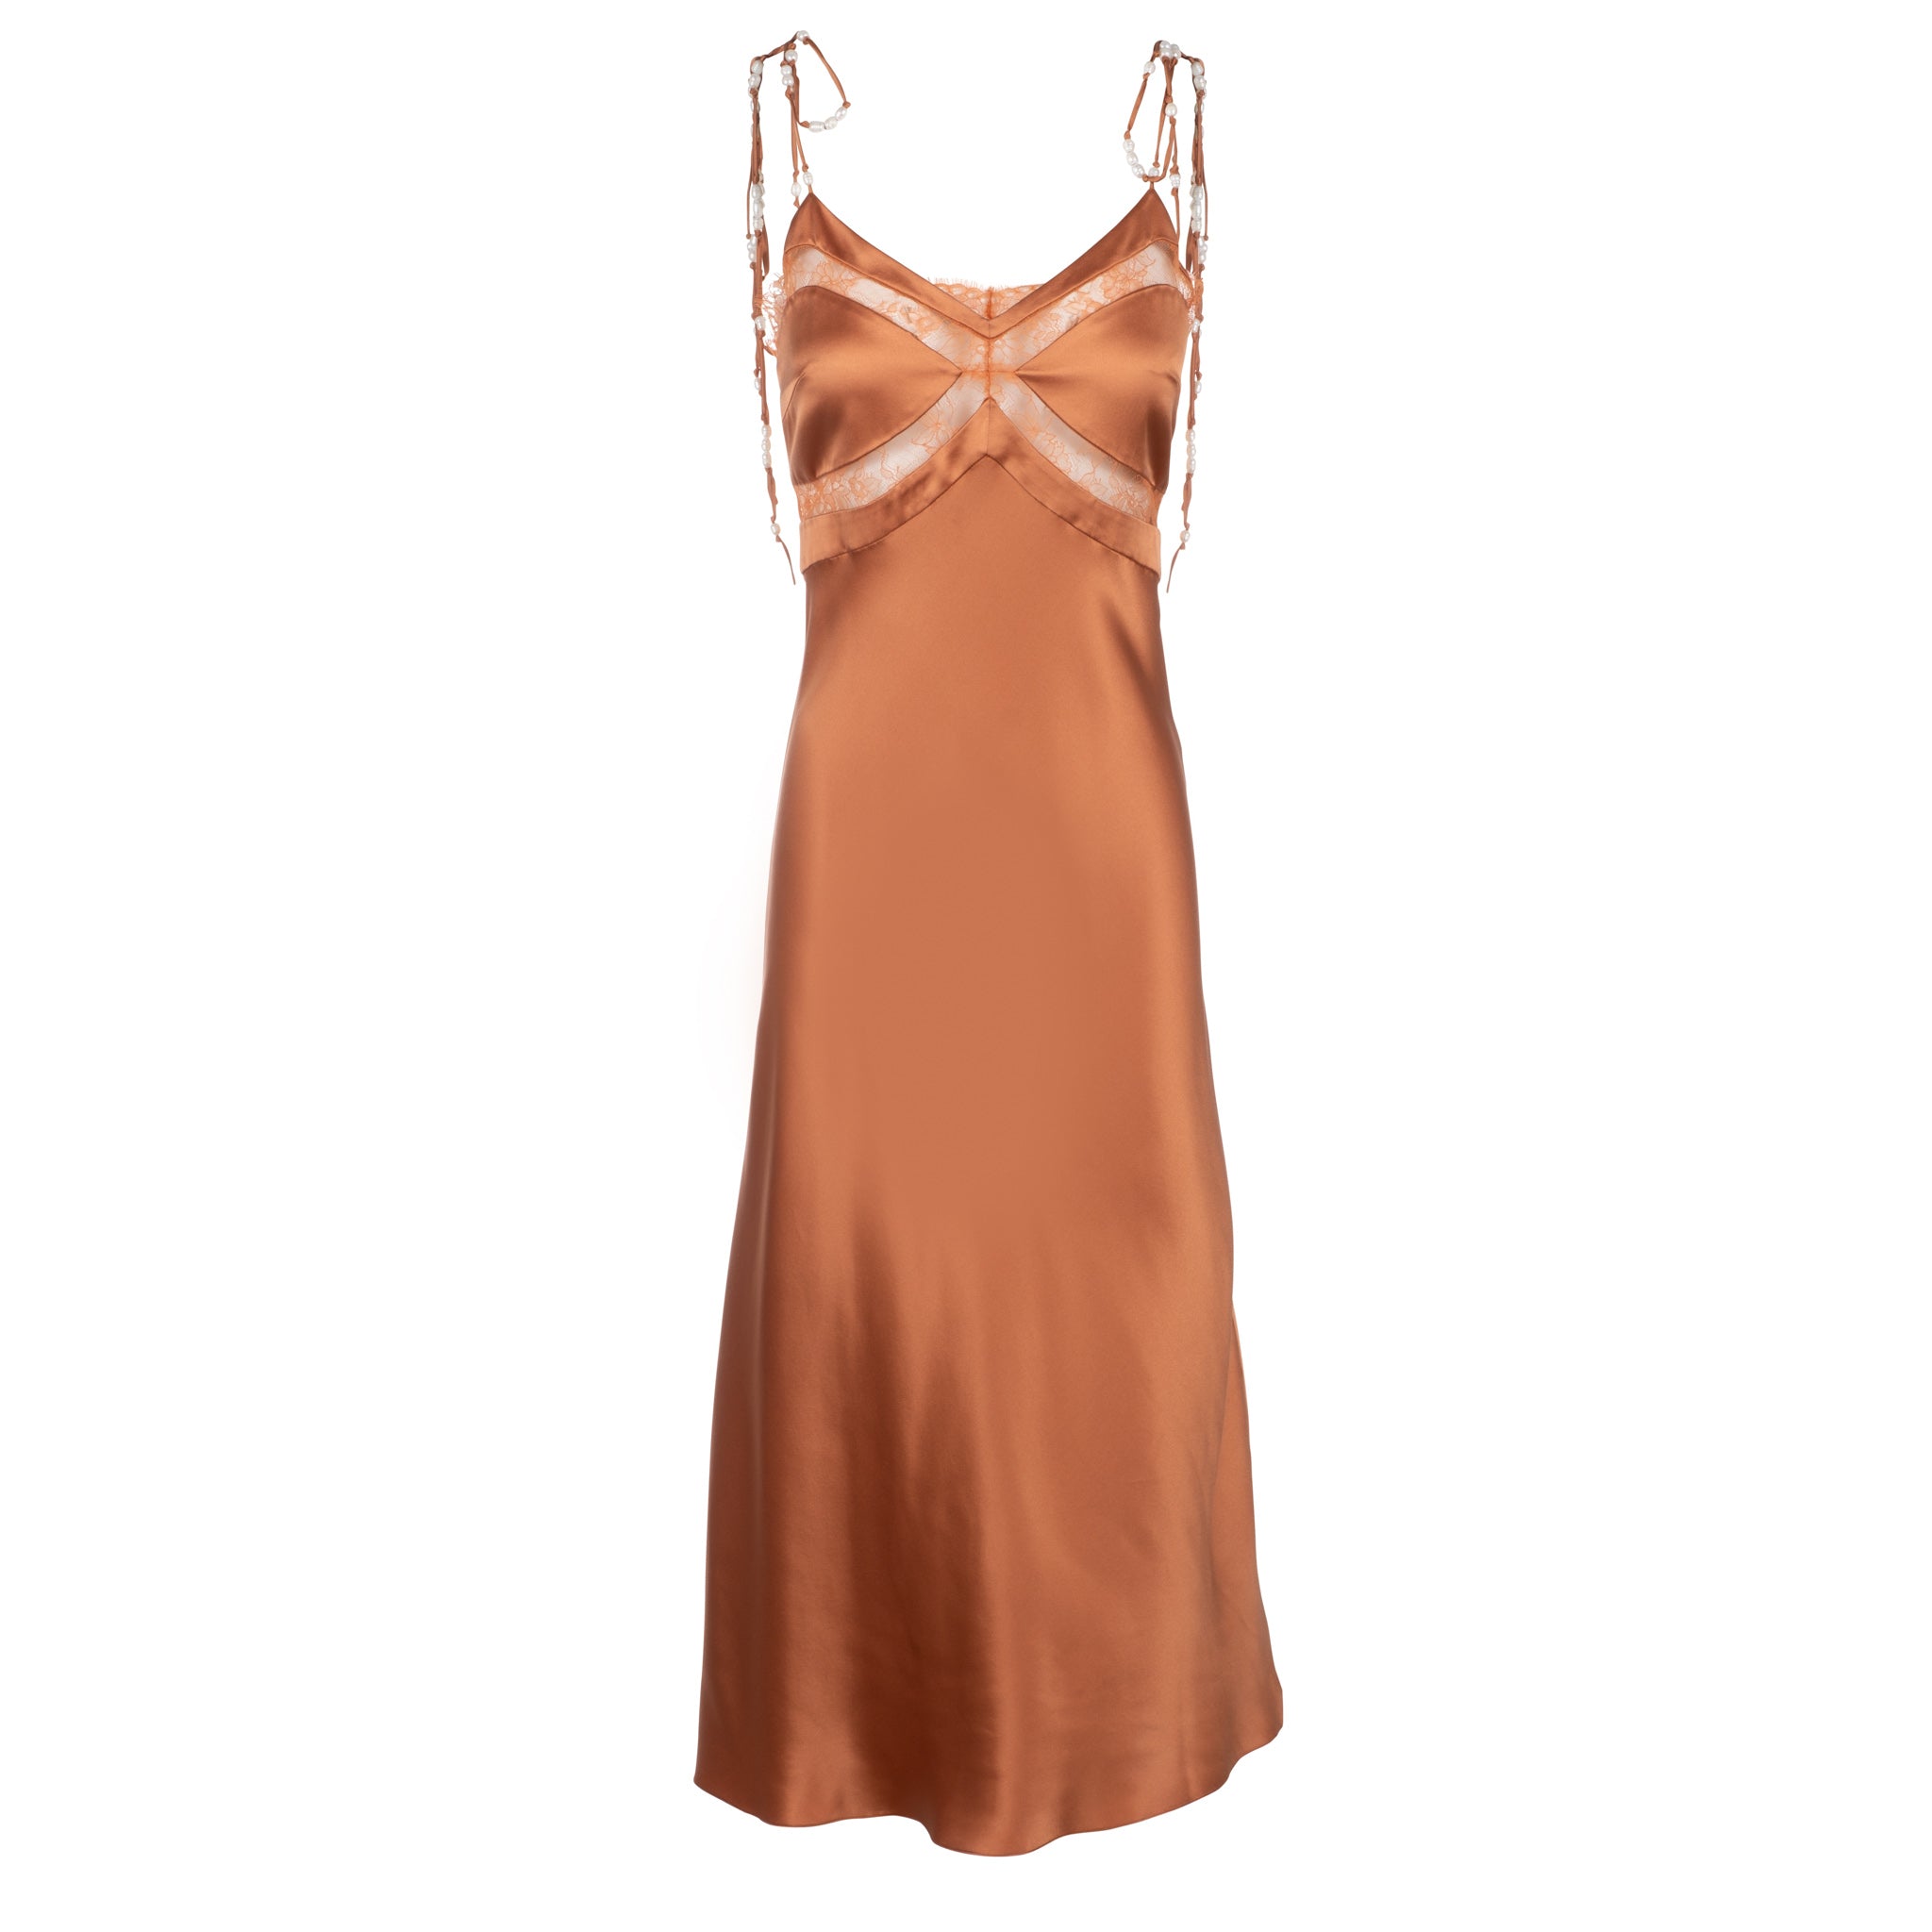 Rhinestone Spaghetti Strap Satin Bodycon Dress – Lauren's Chic Boutique